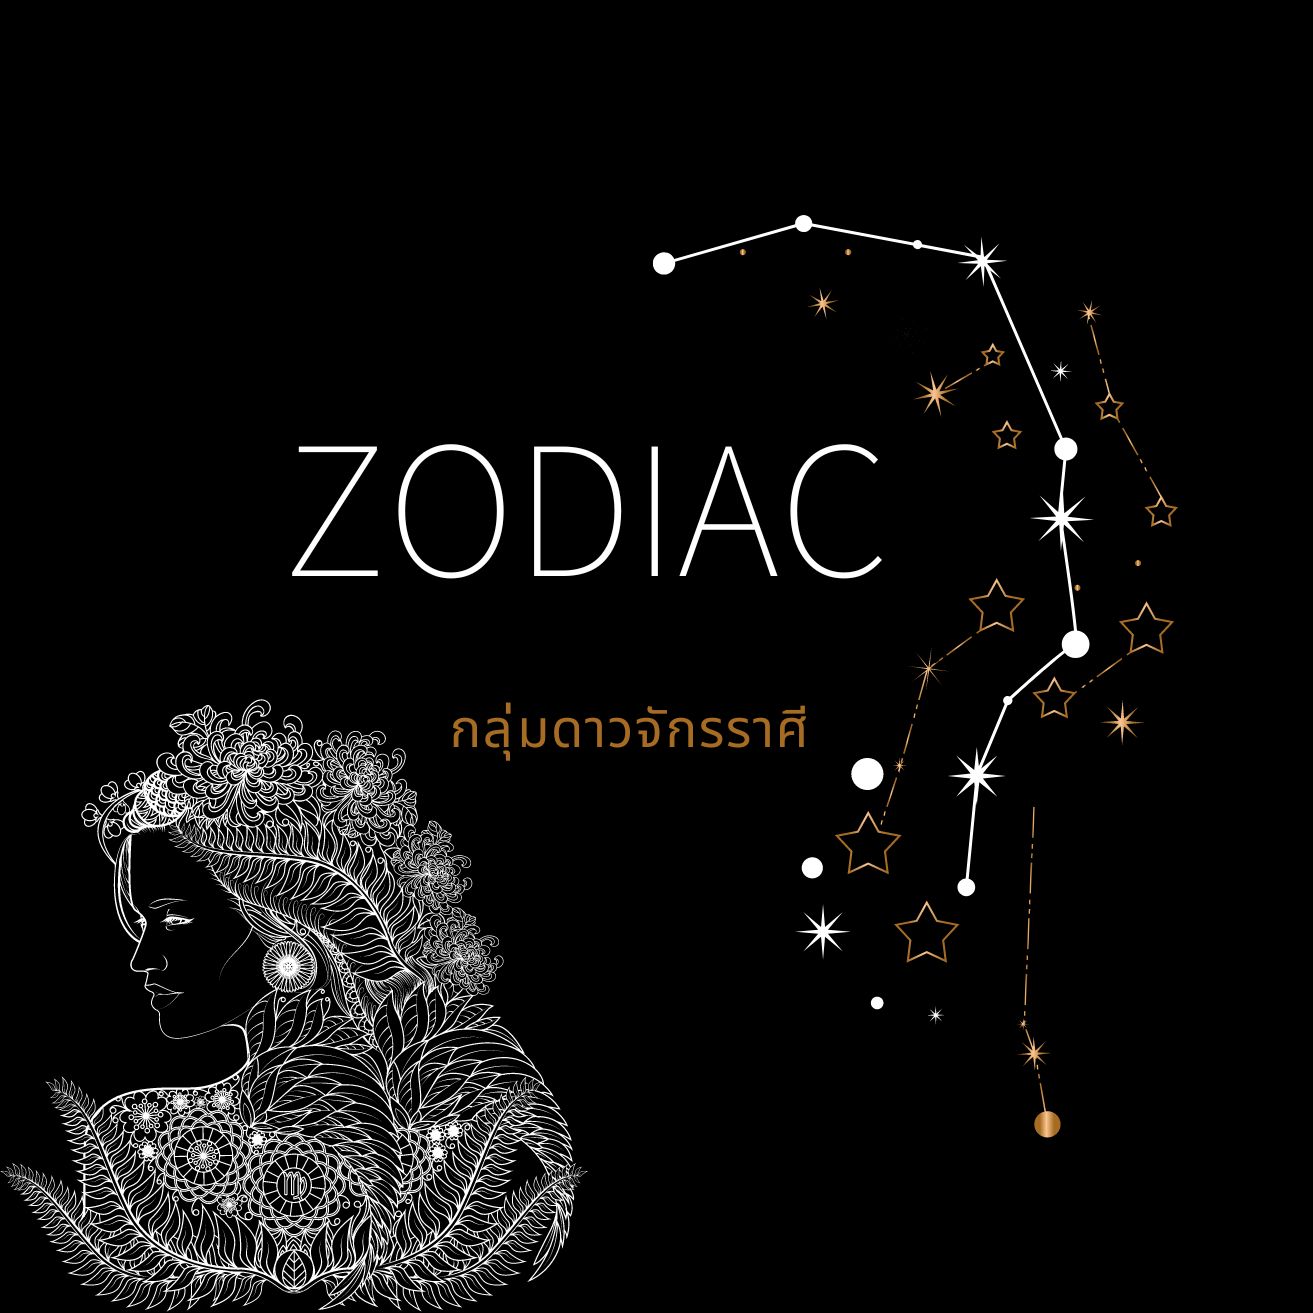 ภาพประกอบไอเดีย Zodiac กลุ่มดาวจักรราศี